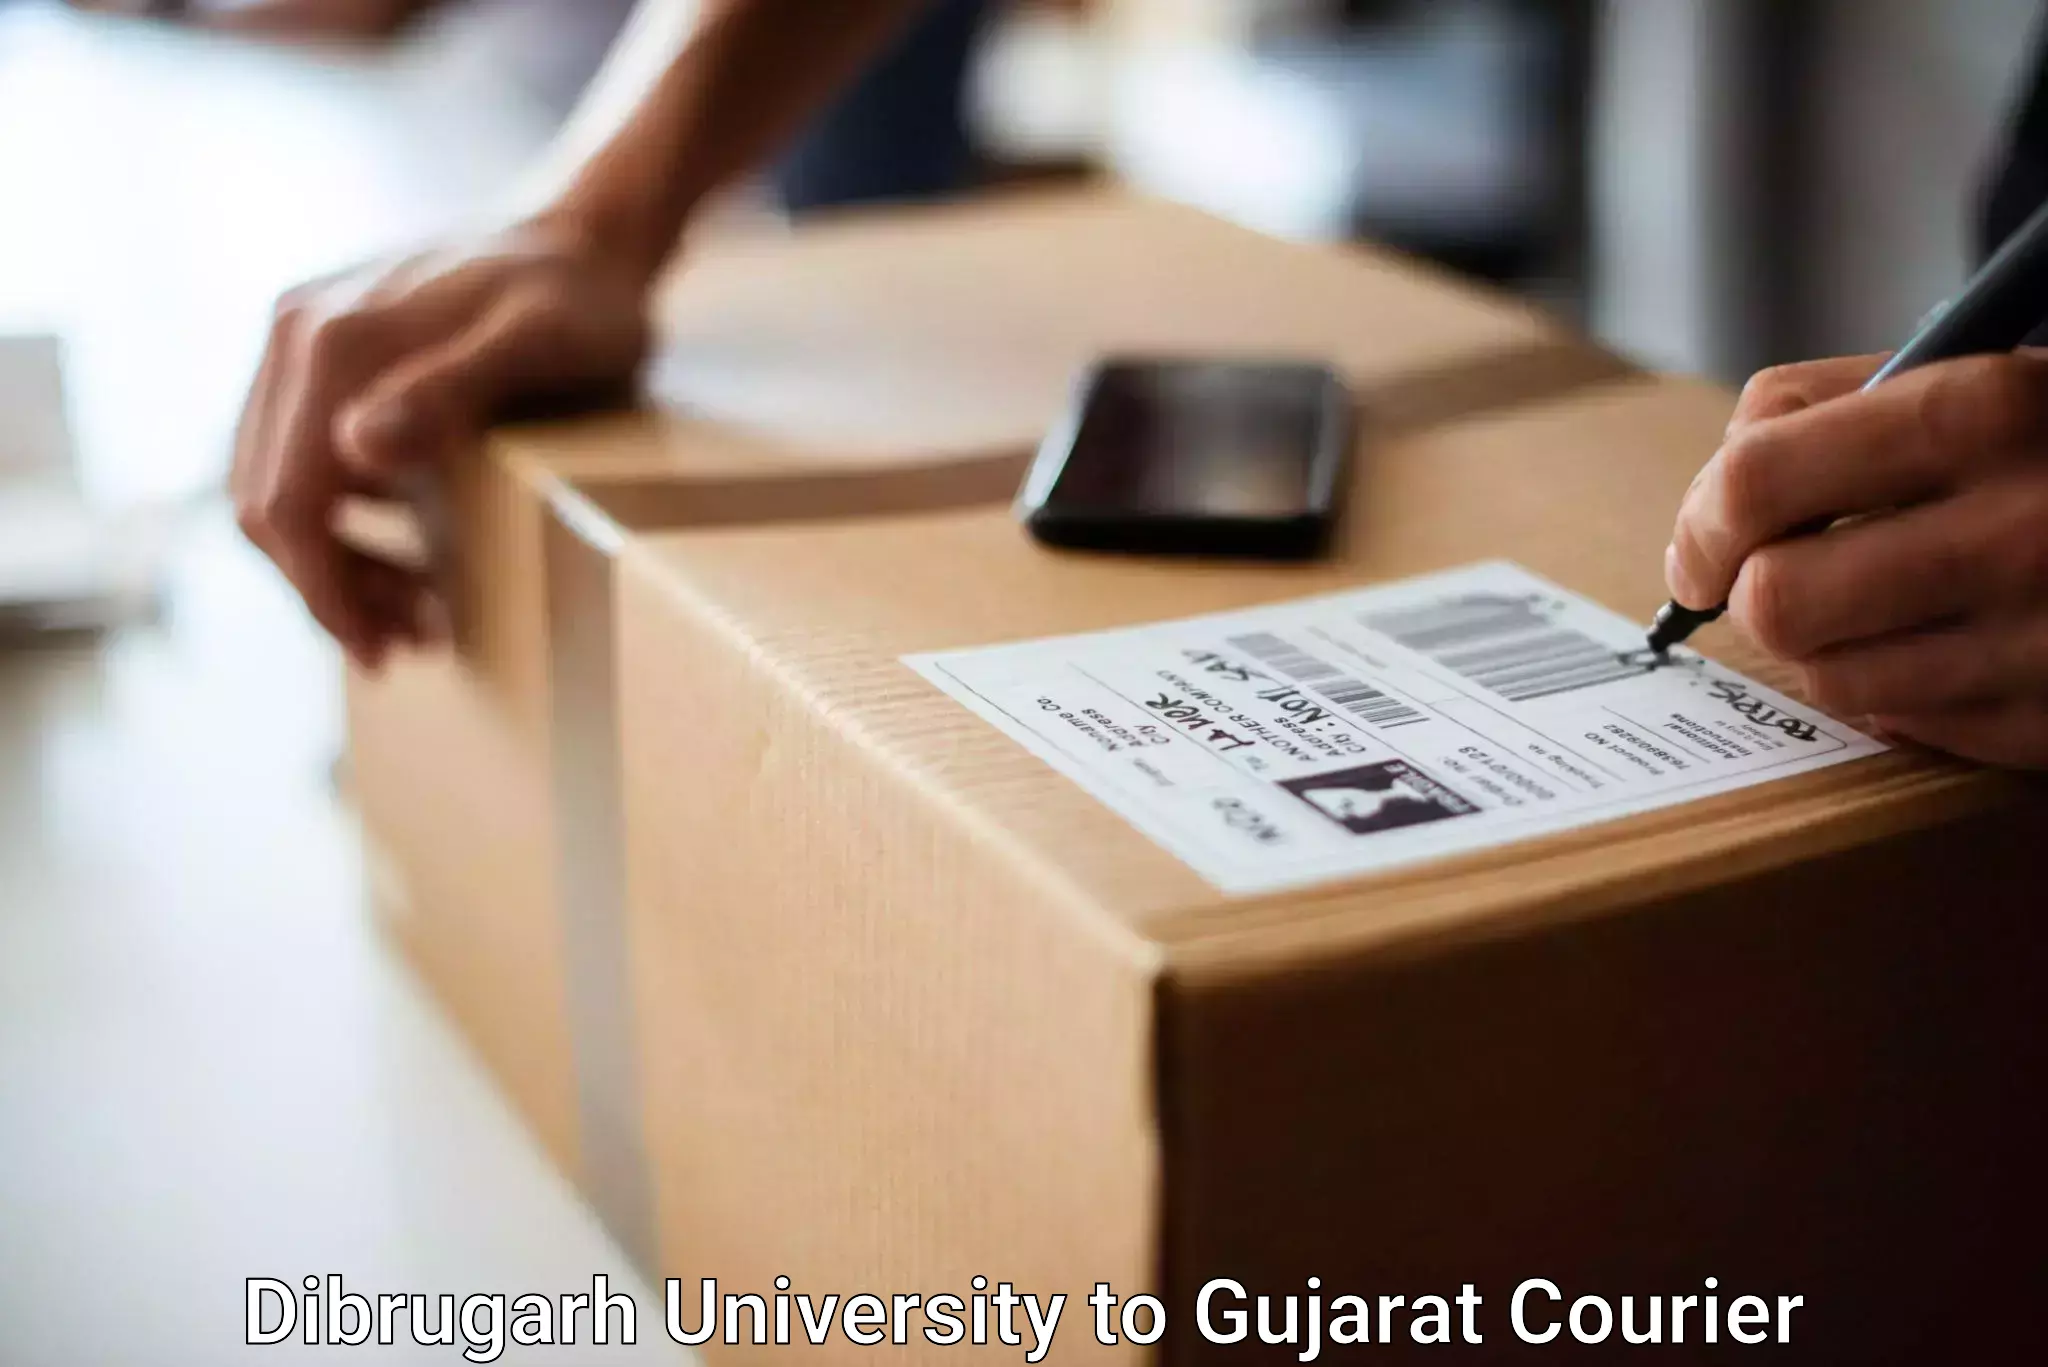 Baggage shipping experts Dibrugarh University to Dhandhuka